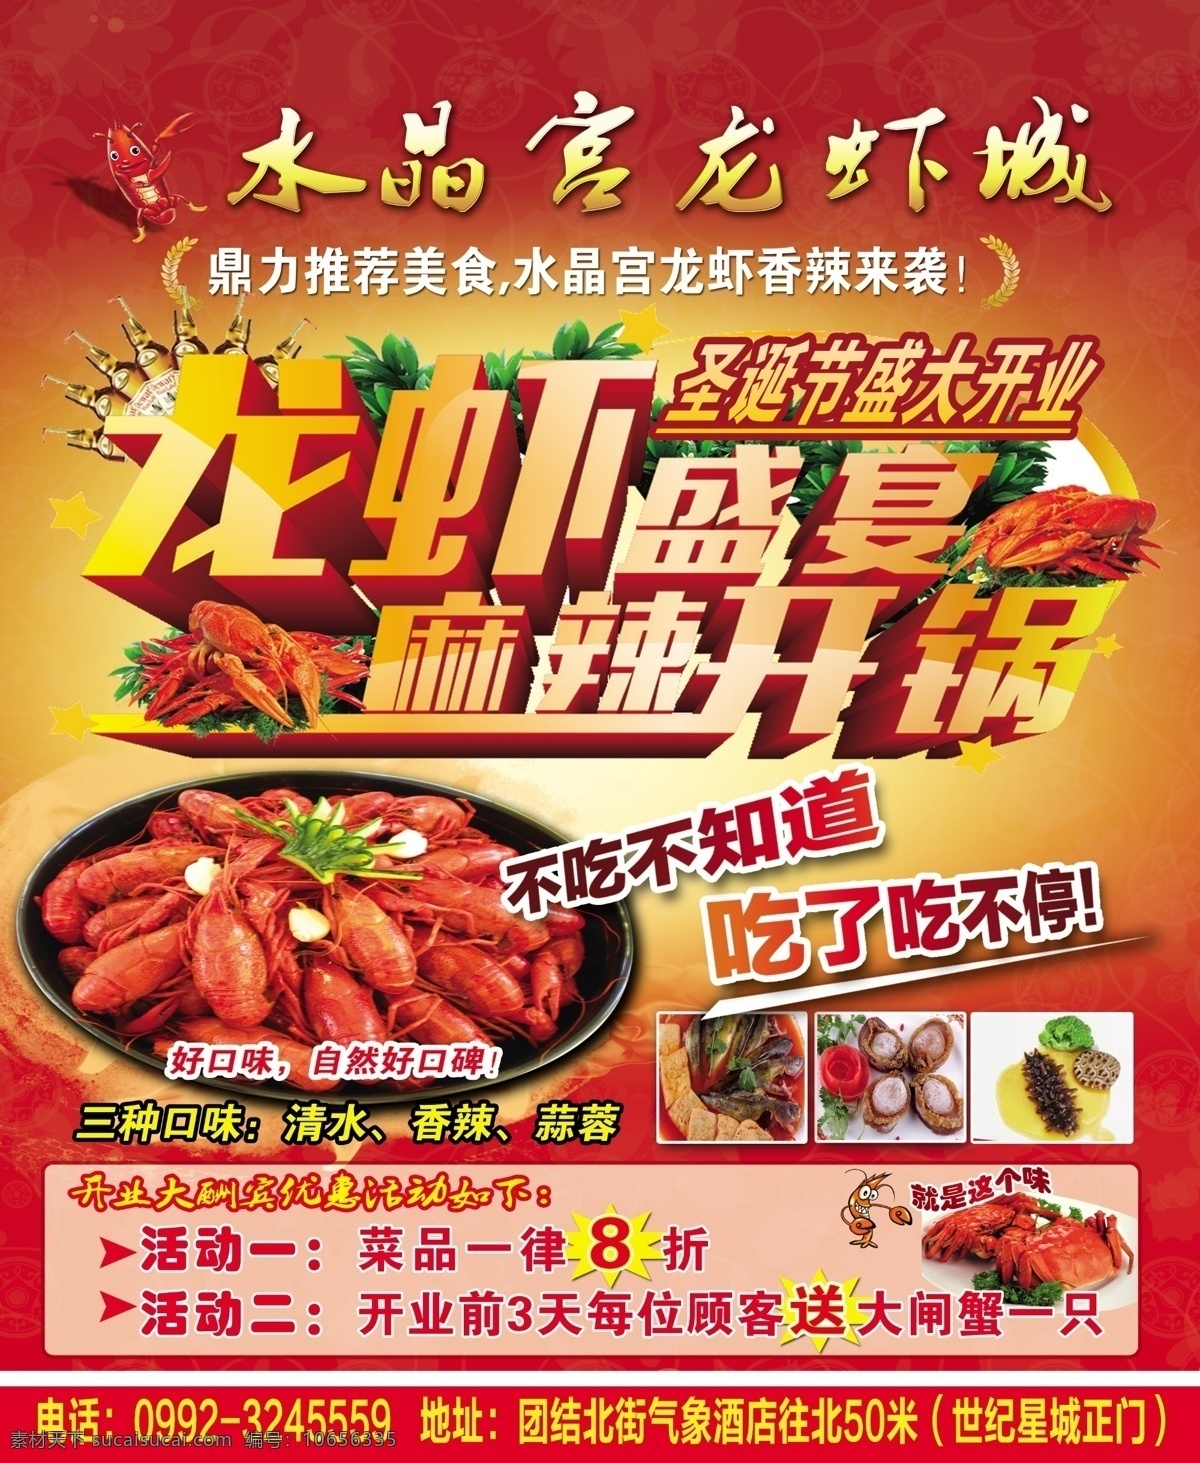 龙虾盛宴广告 大龙虾设计图 好吃的龙虾图 精美小龙虾图 龙虾广告设计